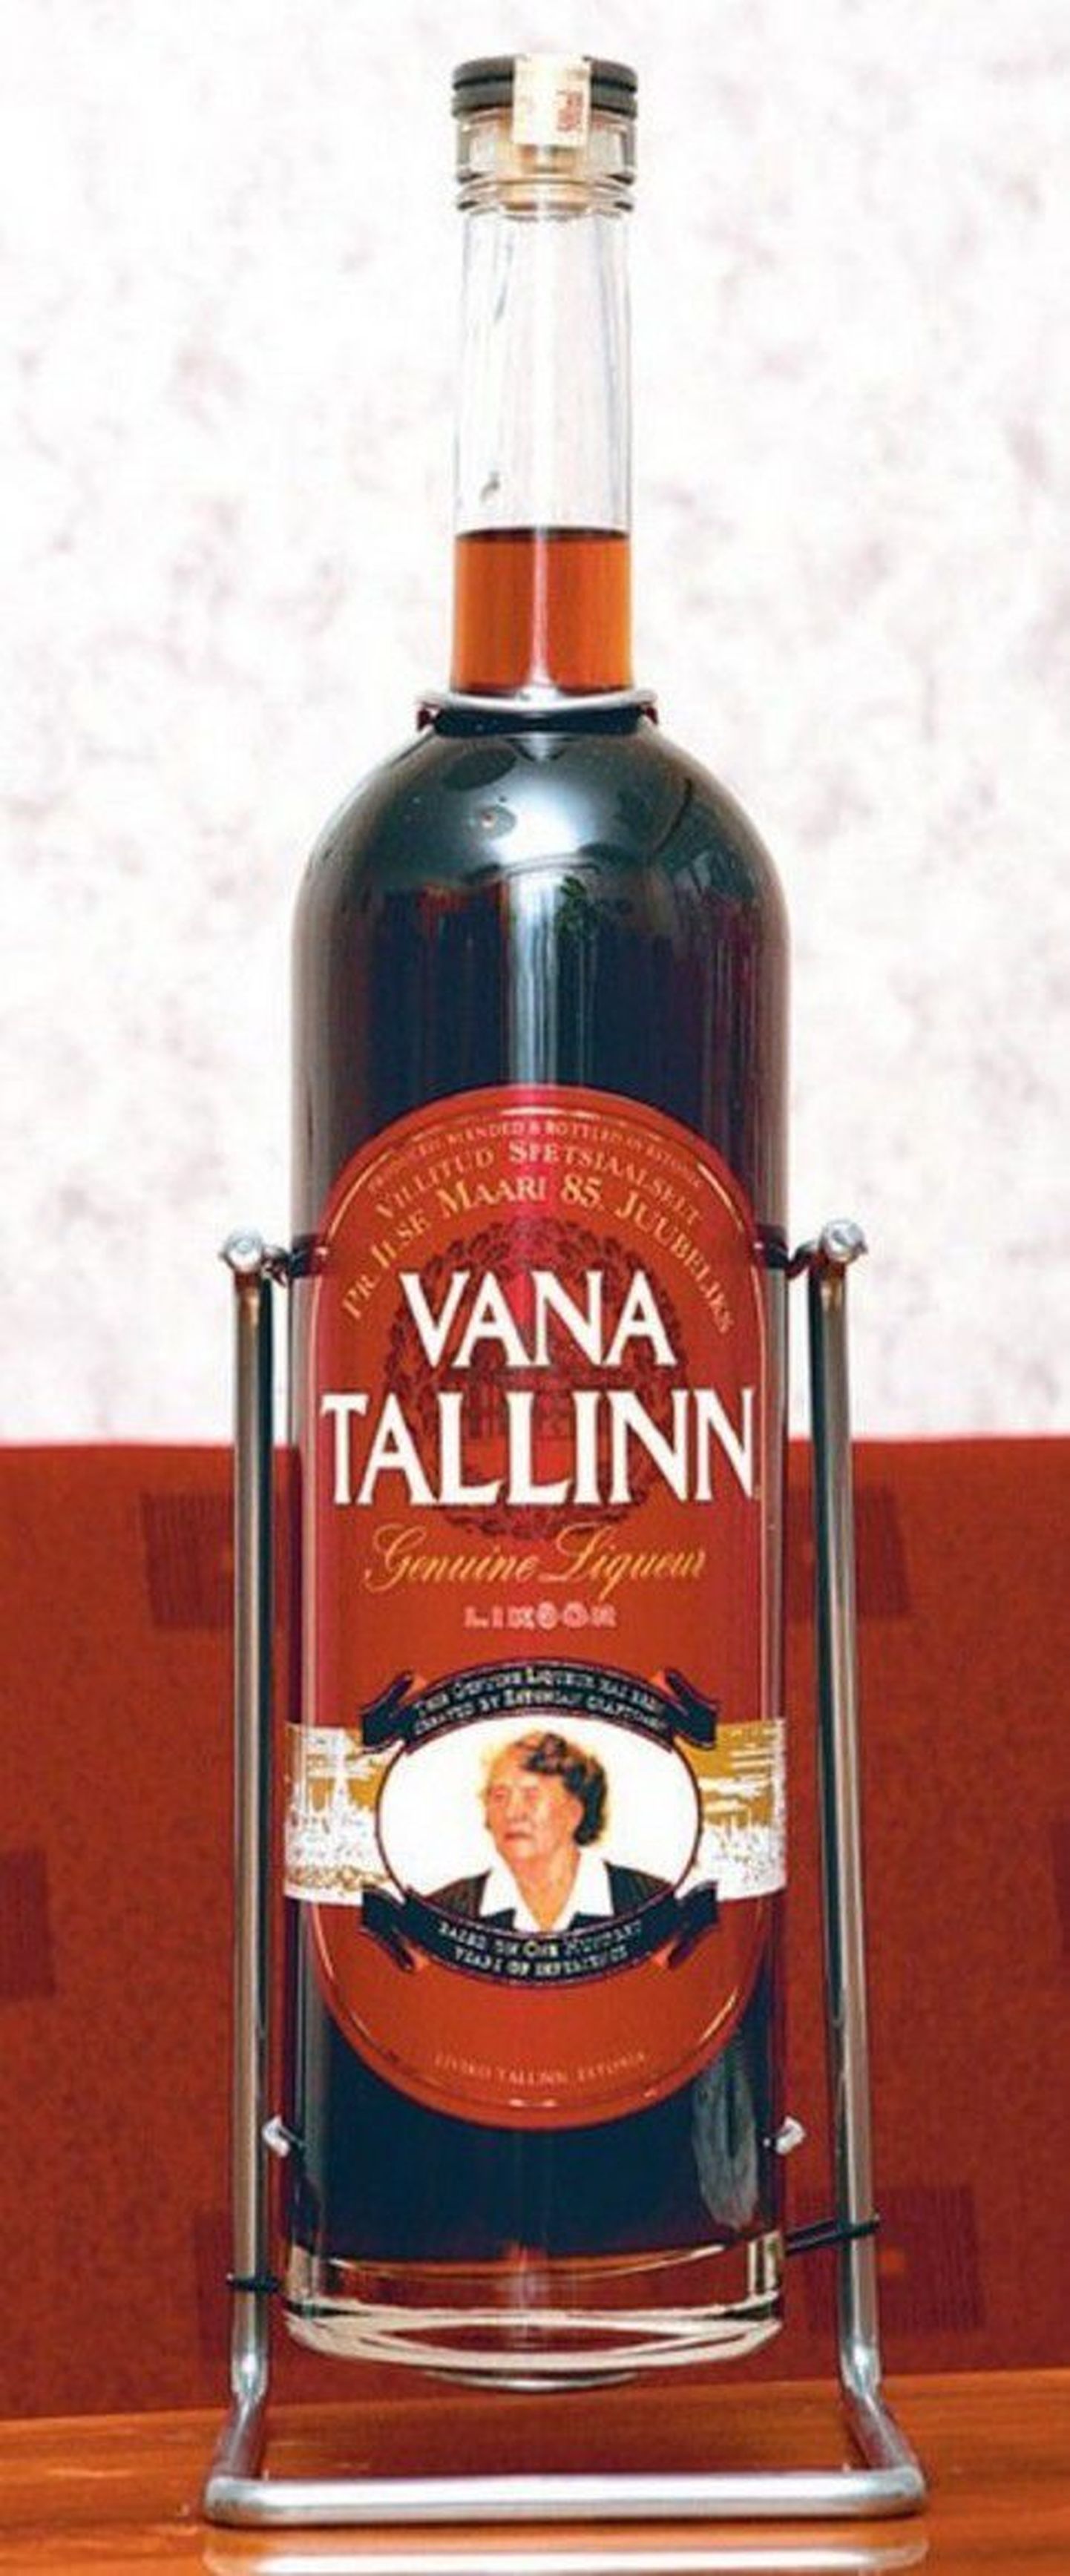 Ilse Maarile kingitud portreega
Vana Tallinna pudel ja likööri
85 miljones pudel.